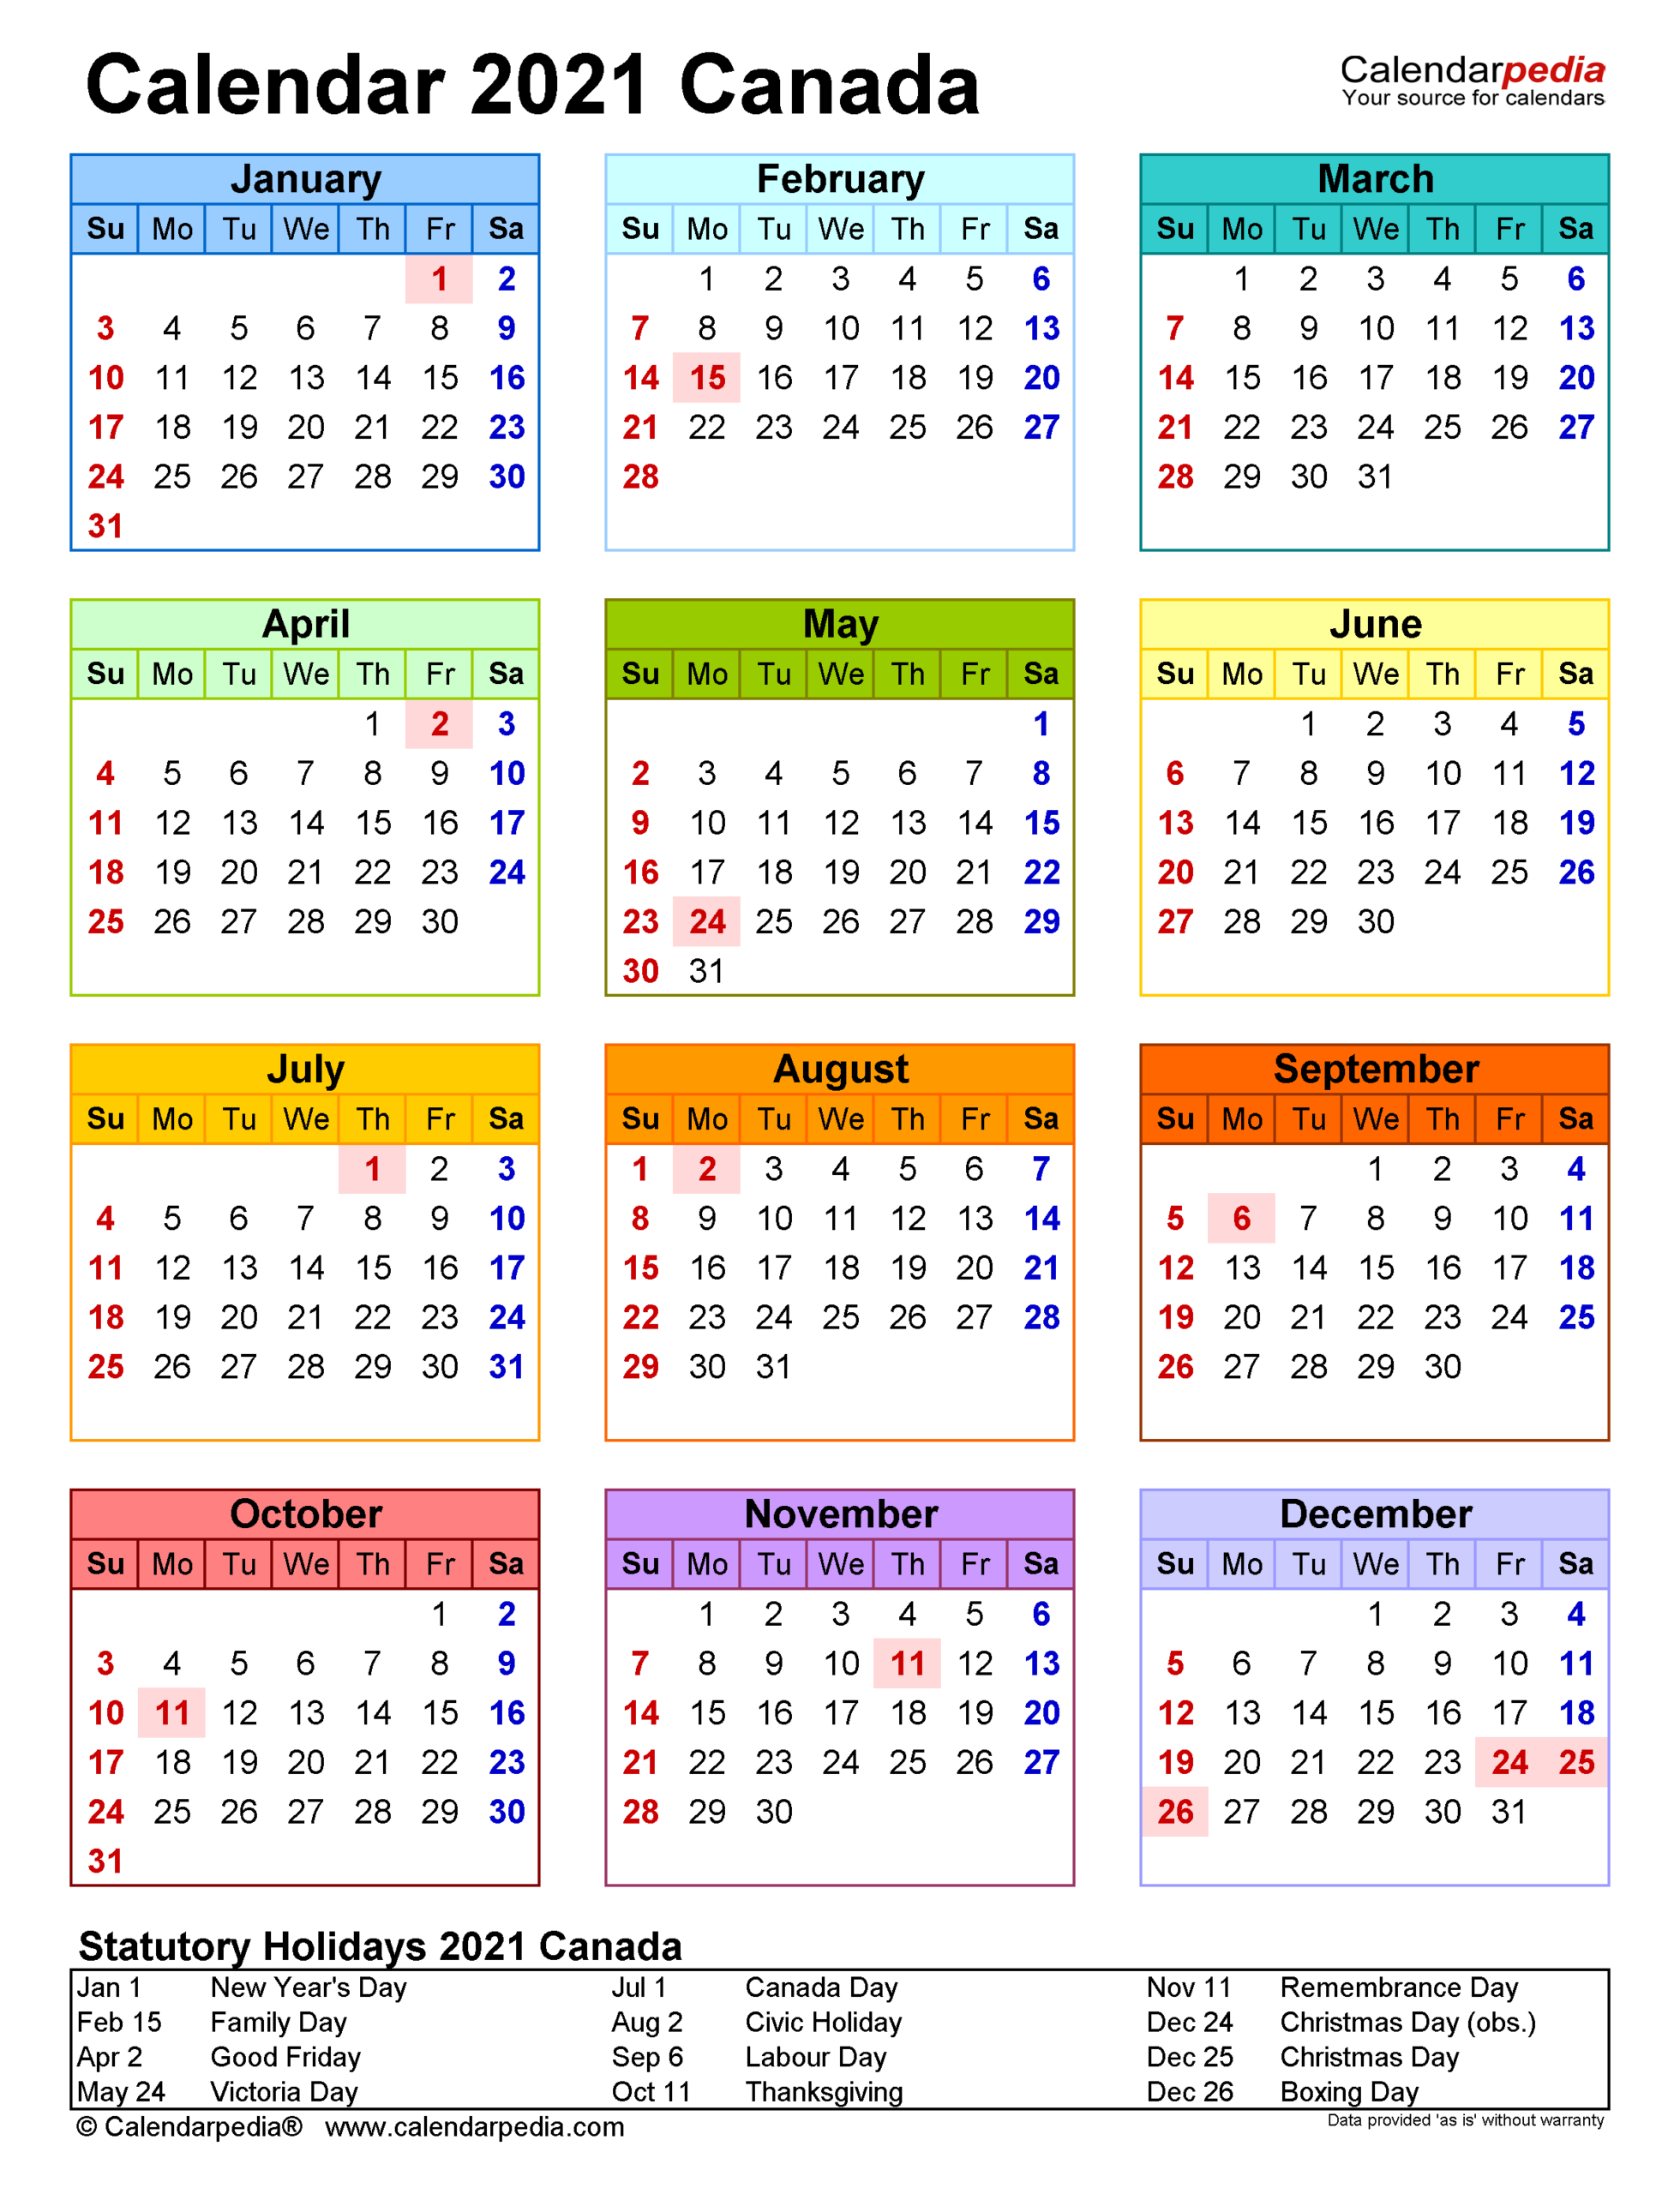 Calendar 2021 Canada Calendarpedia-Mercantile Holiday Calender 2021